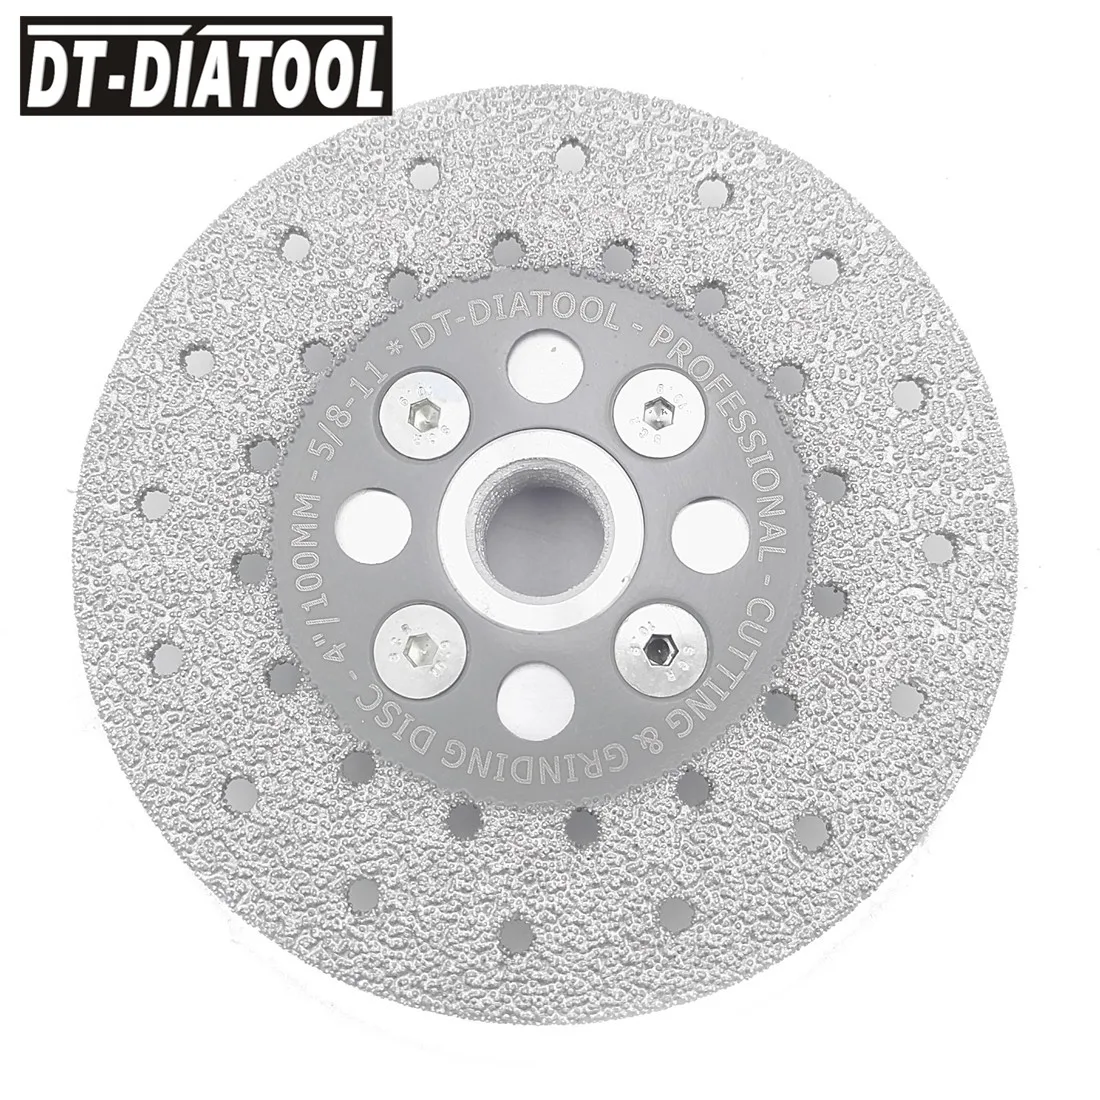 Двухсторонний Алмазный шлифовальный диск DT-DIATOOL 1 шт. с фланцем 5/8-11, лезвие пилы для мрамора, гранита и бетона от AliExpress WW